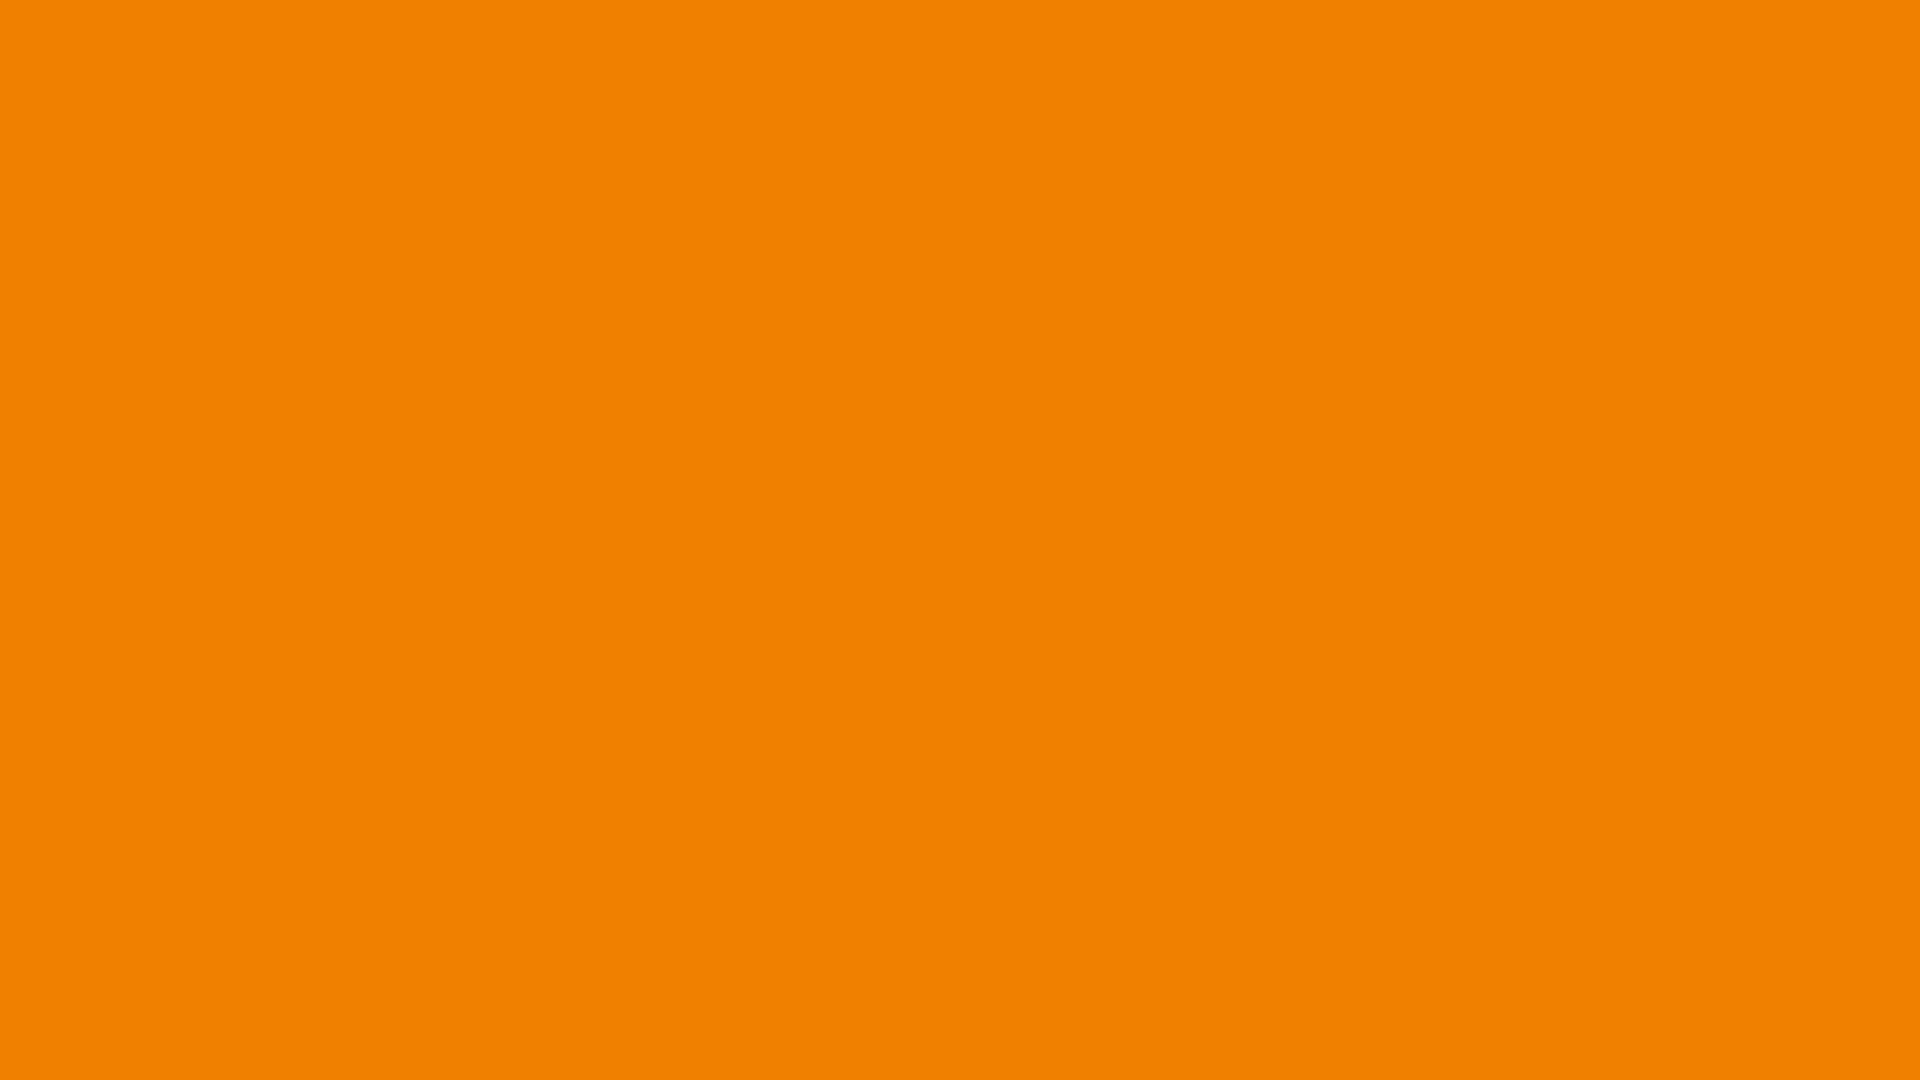 Mã HTML màu cam tươi sáng sẽ giúp trang web của bạn trở nên bắt mắt hơn với sắc màu đặc trưng. Tangerine Color HTML là cách tuyệt vời để thể hiện cá tính của bạn trên chính trang web hoặc blog của mình.